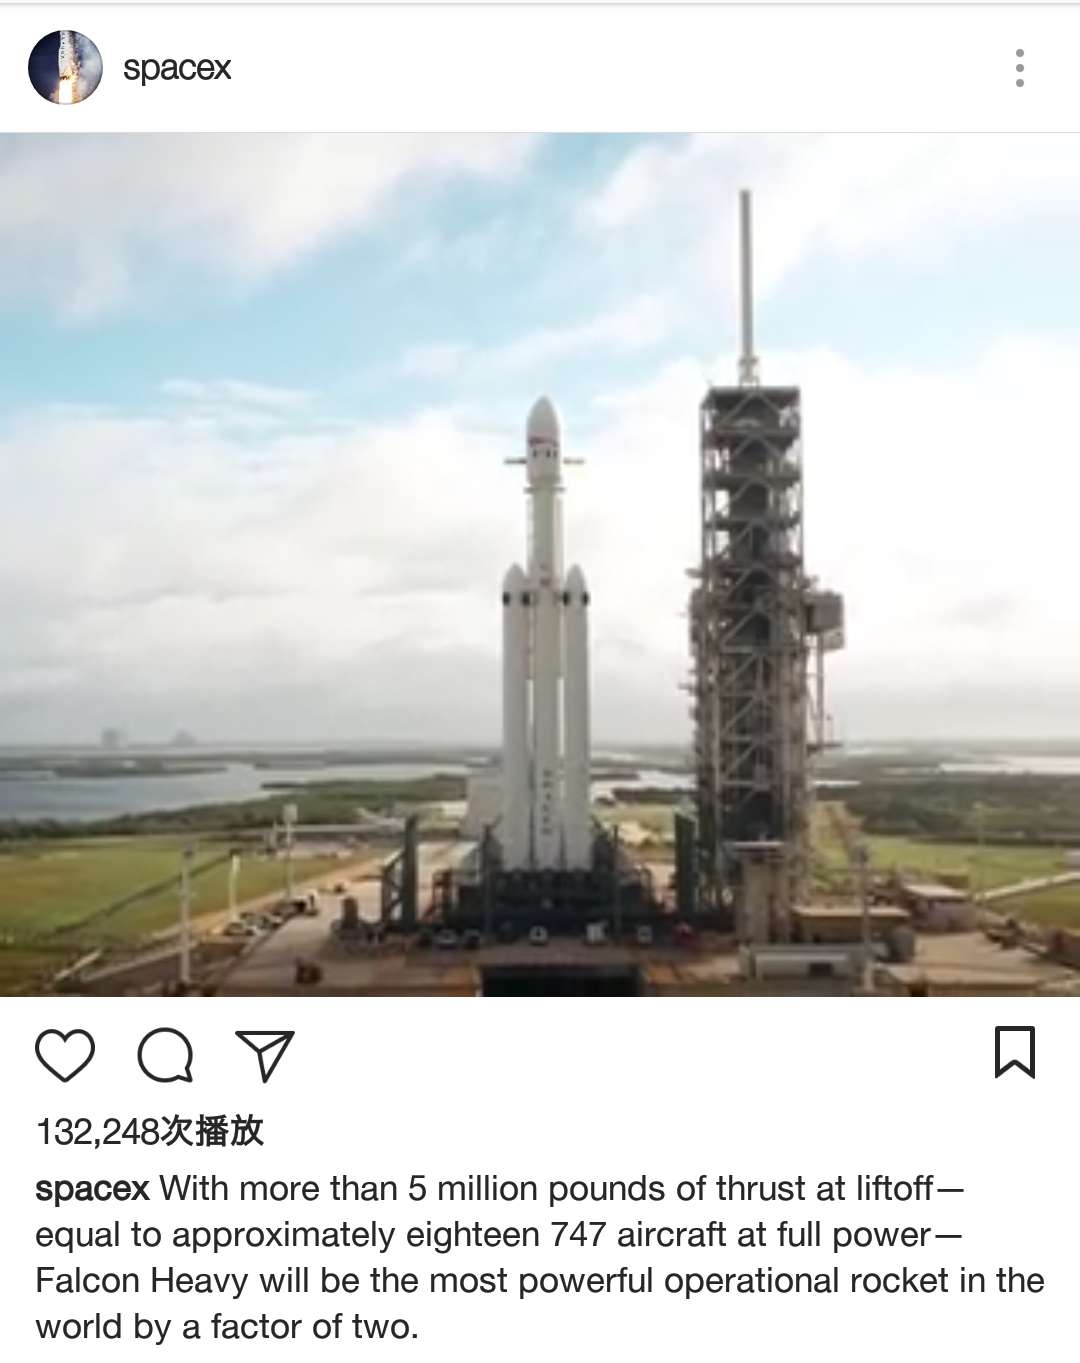 SpaceX视频展示重型猎鹰火箭 将是现役运力最强火箭